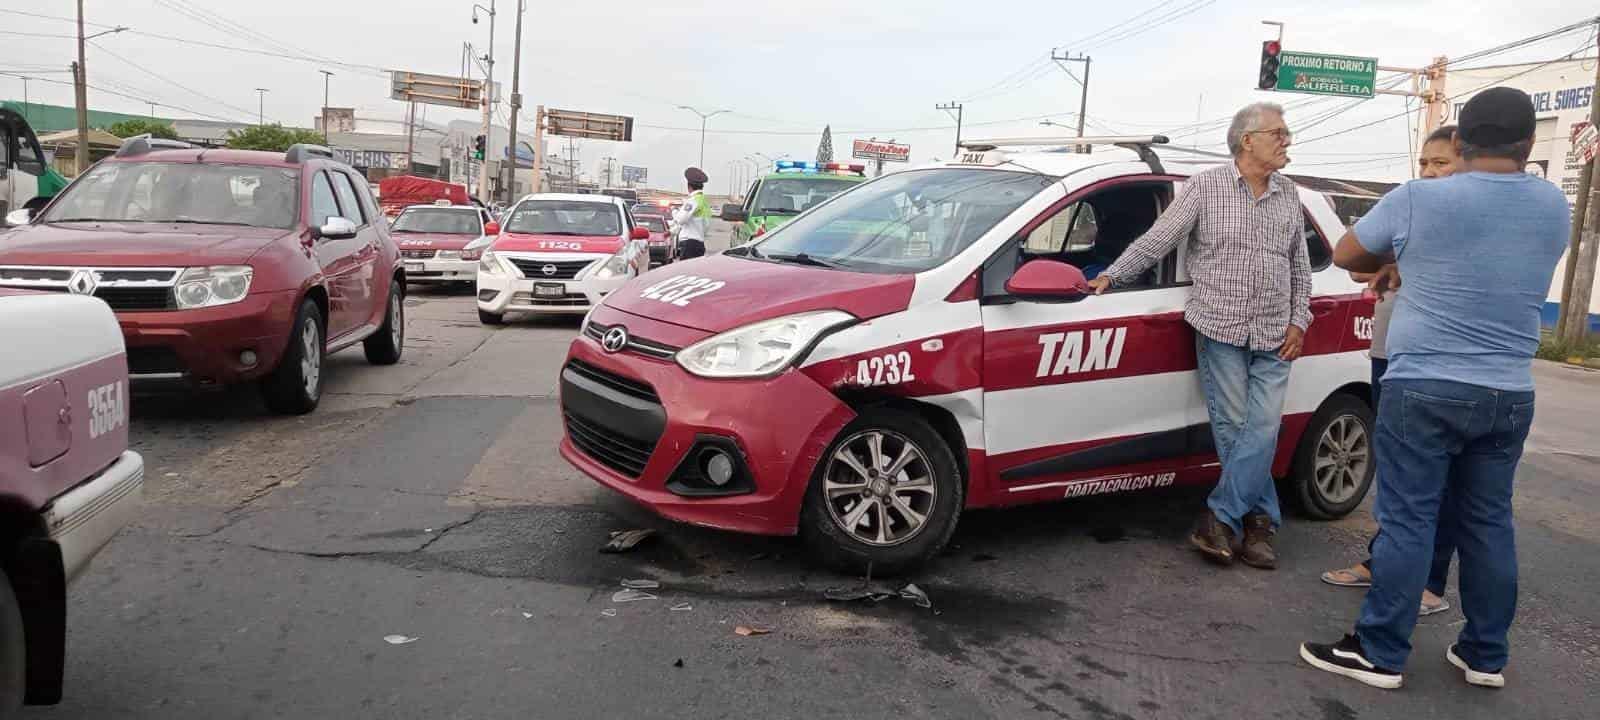 Chocan taxis en la colonia Palma Sola; uno de ellos se da a la fuga